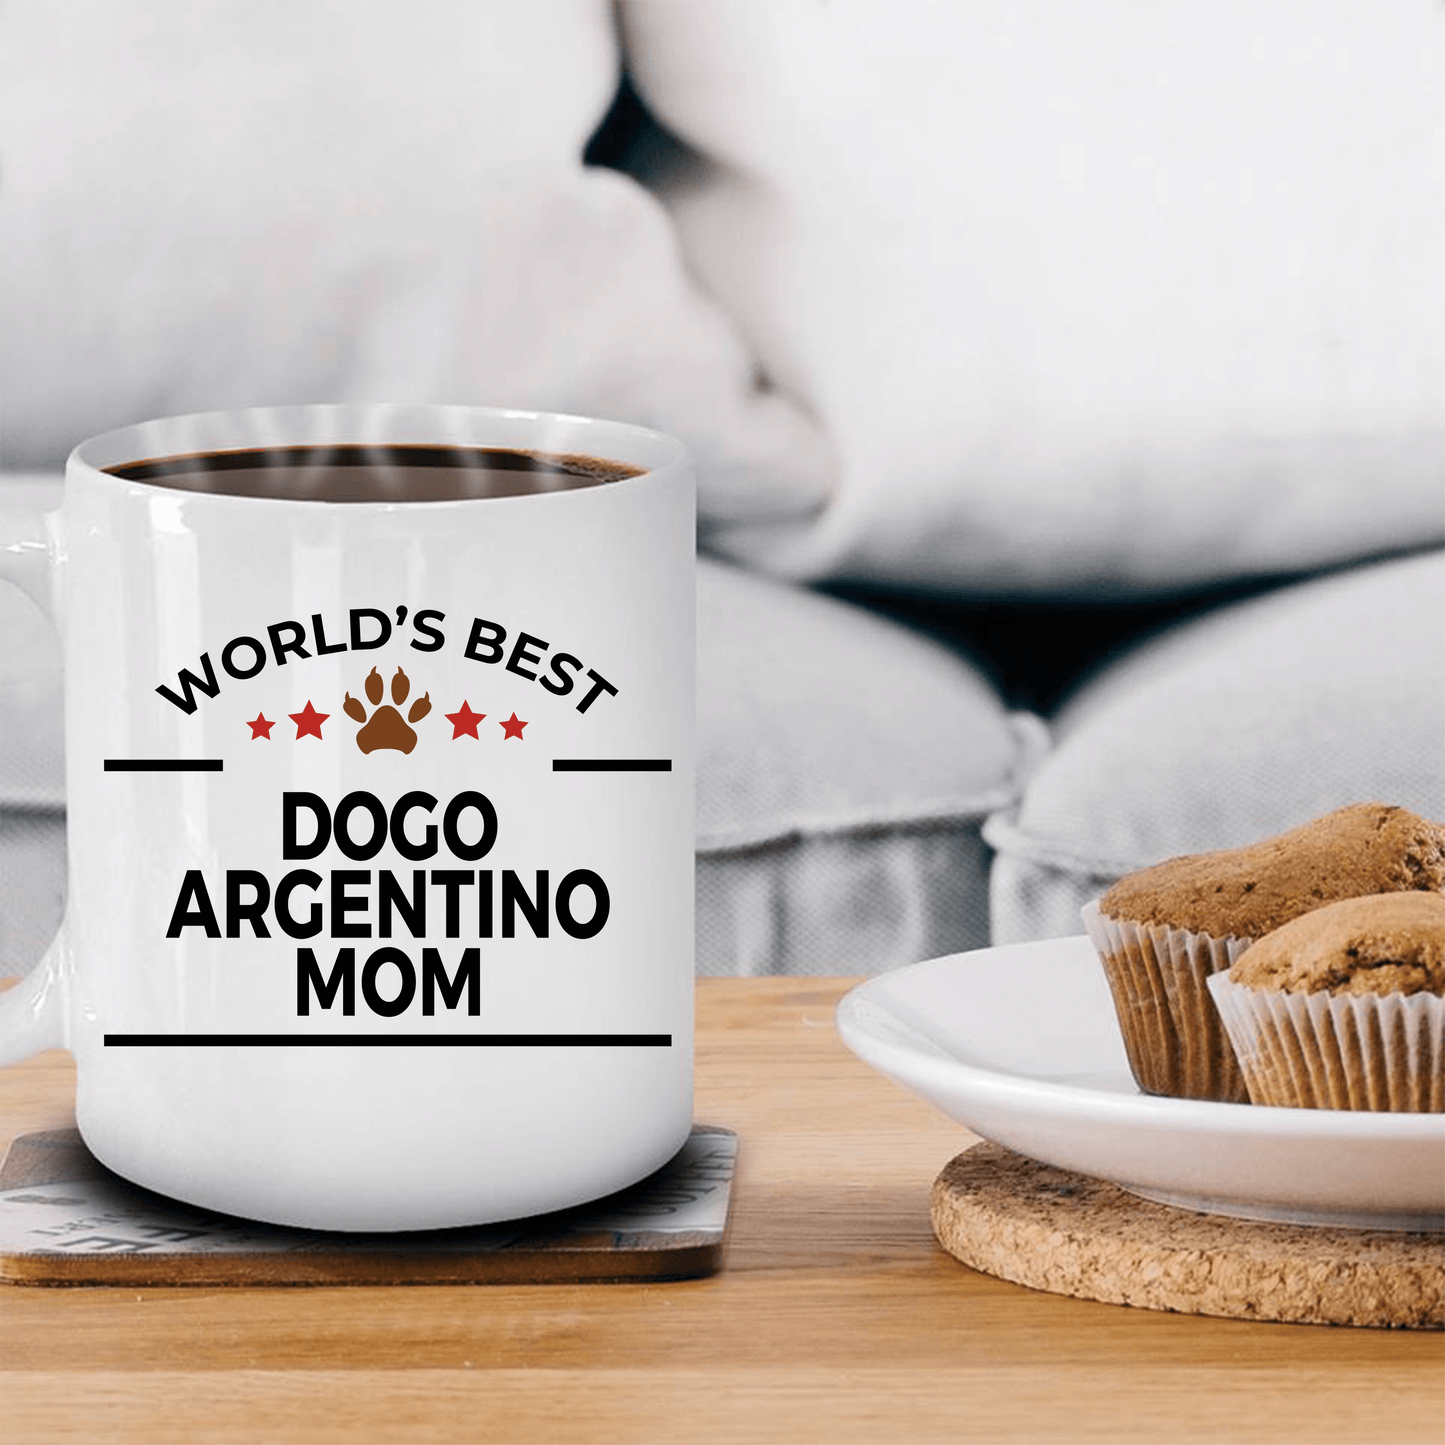 Dogo Argentino Dog Lover Gift World's Best Mom Birthday Mother's Day White Ceramic Coffee Mug